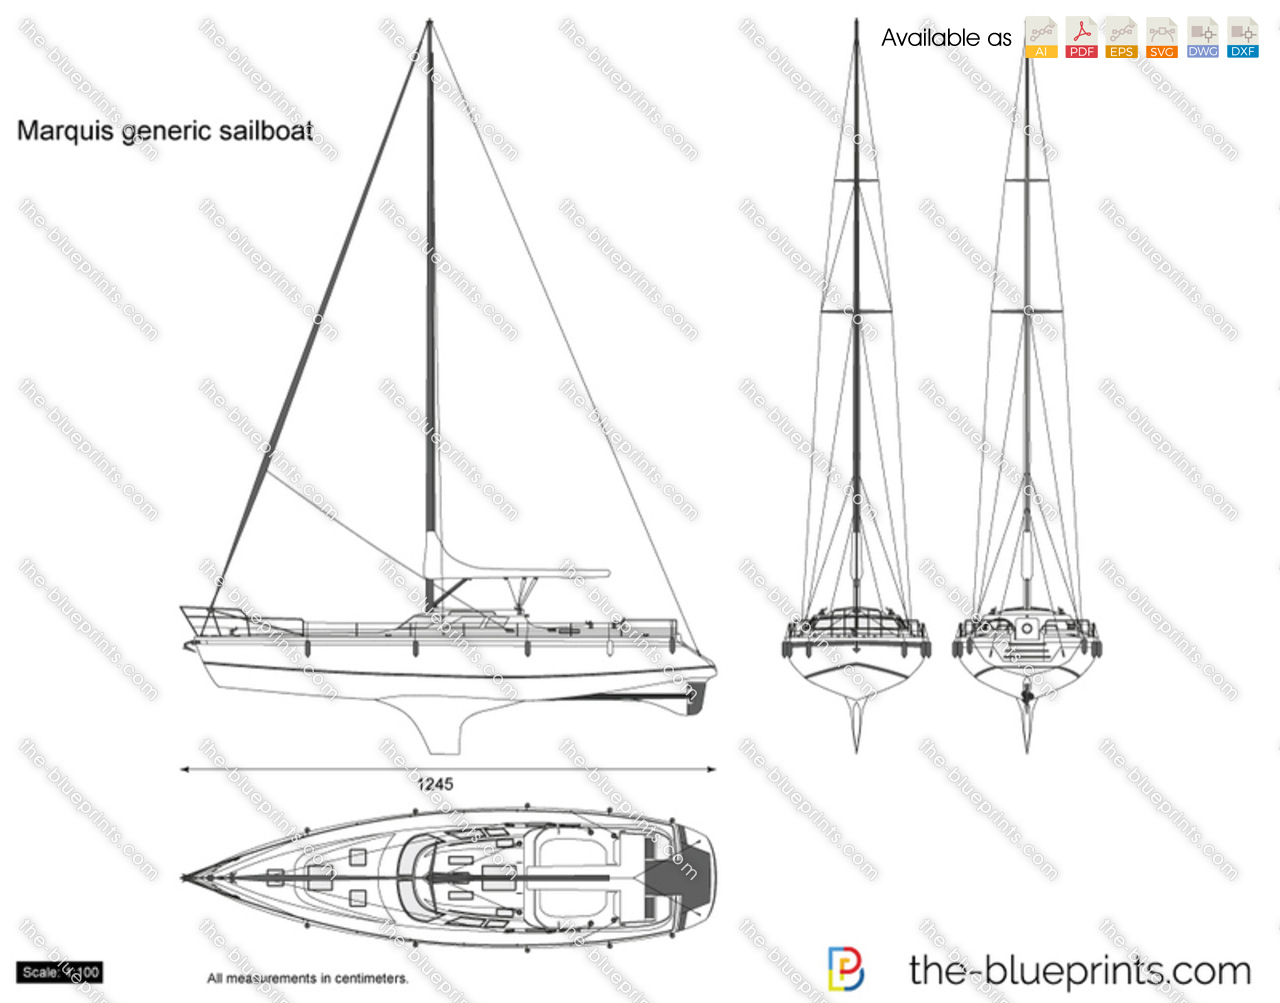 Marquis generic sailboat